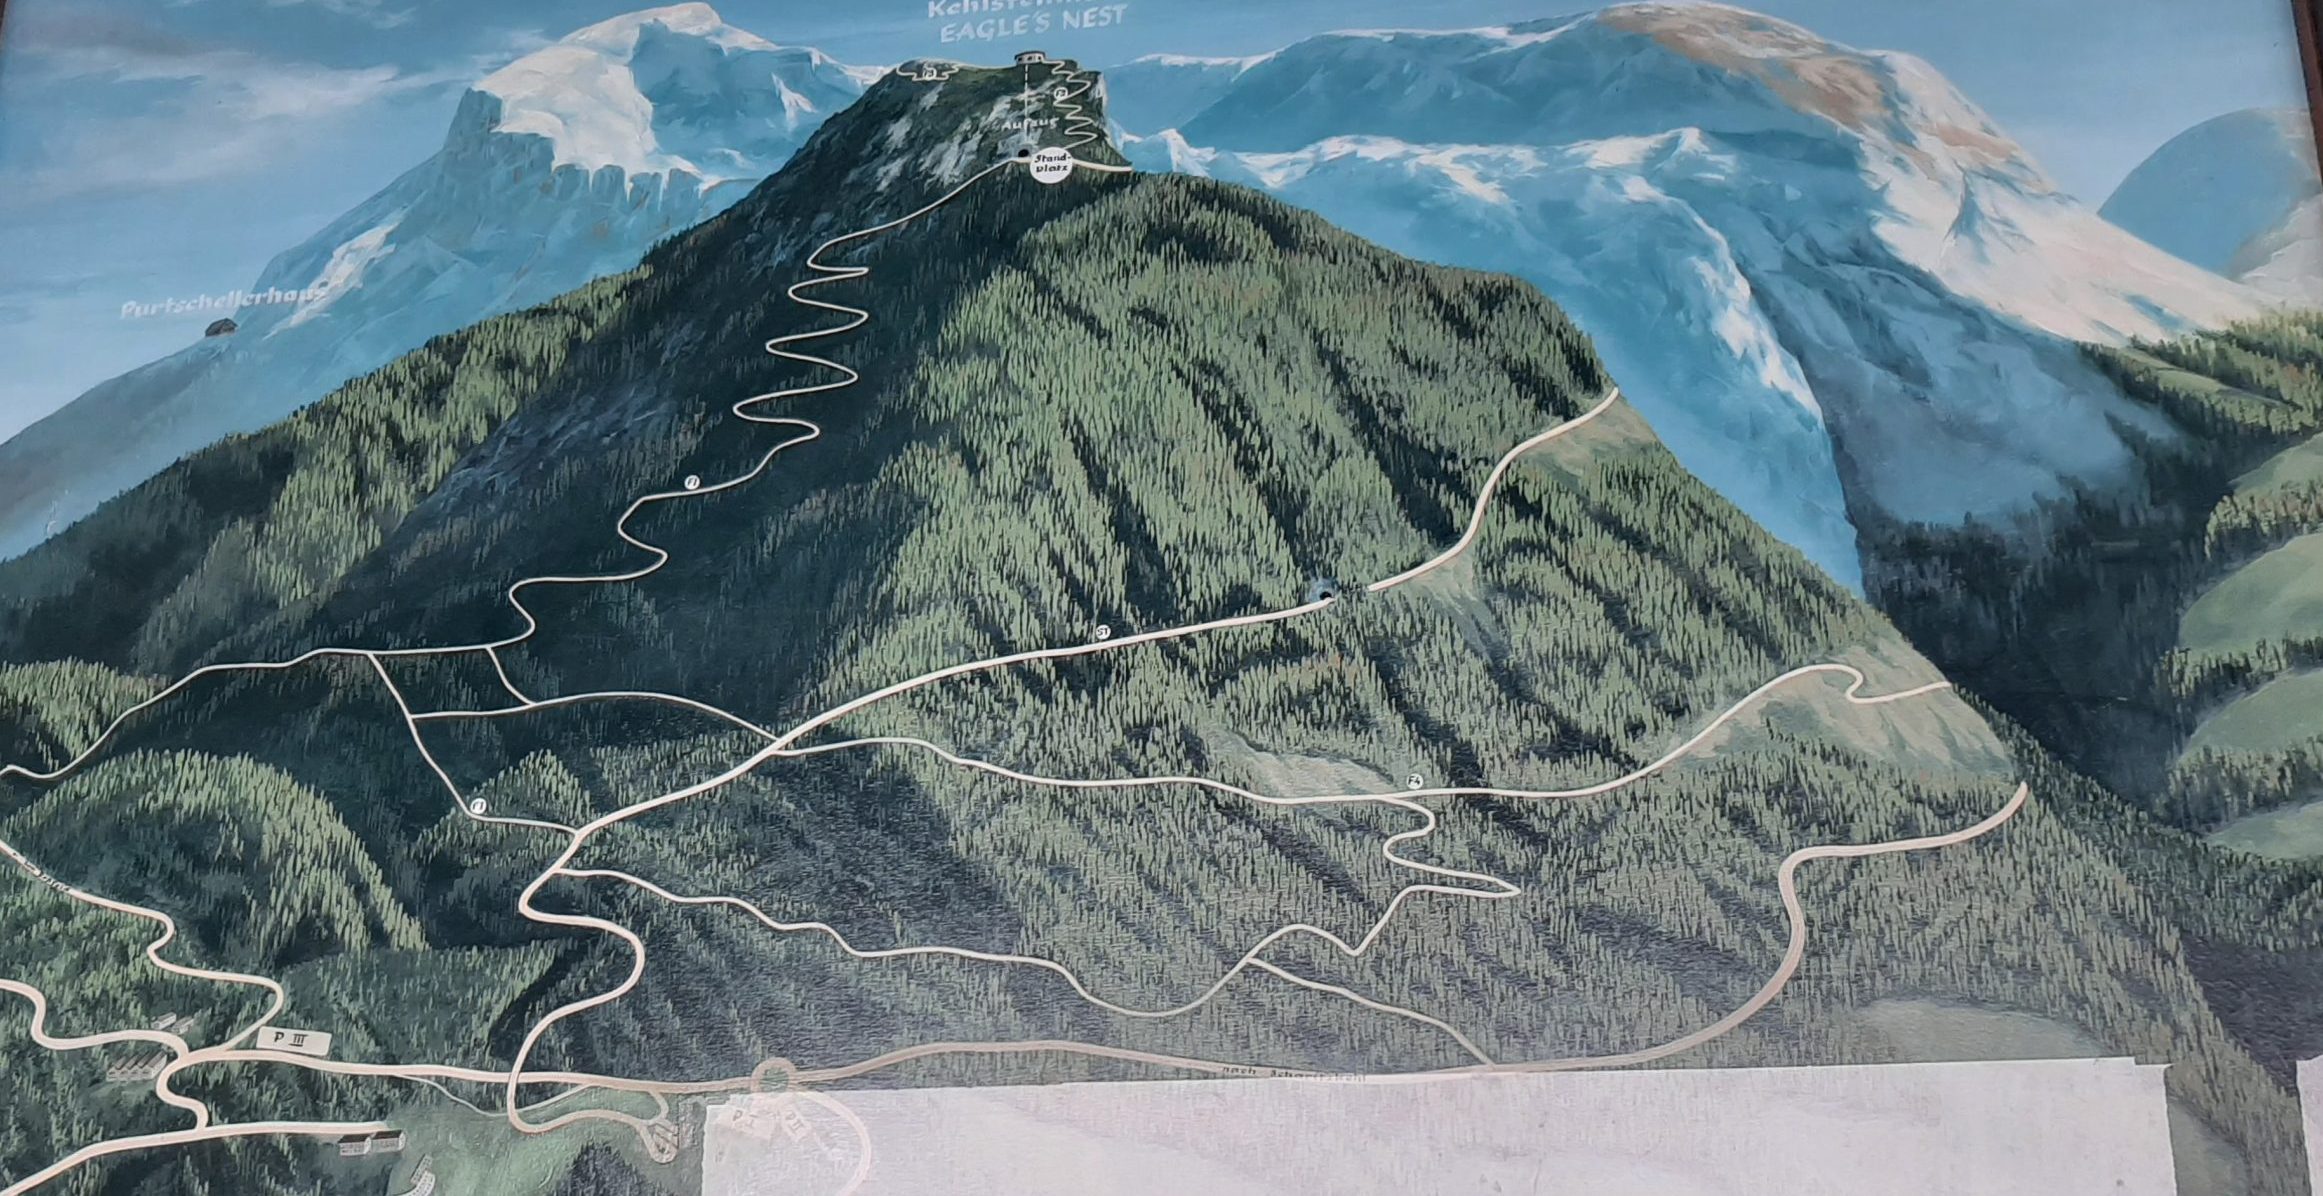 Geografska karta sa ucrtanim putevima koji vode na vrh Kelštajn, do Hitlerove vile